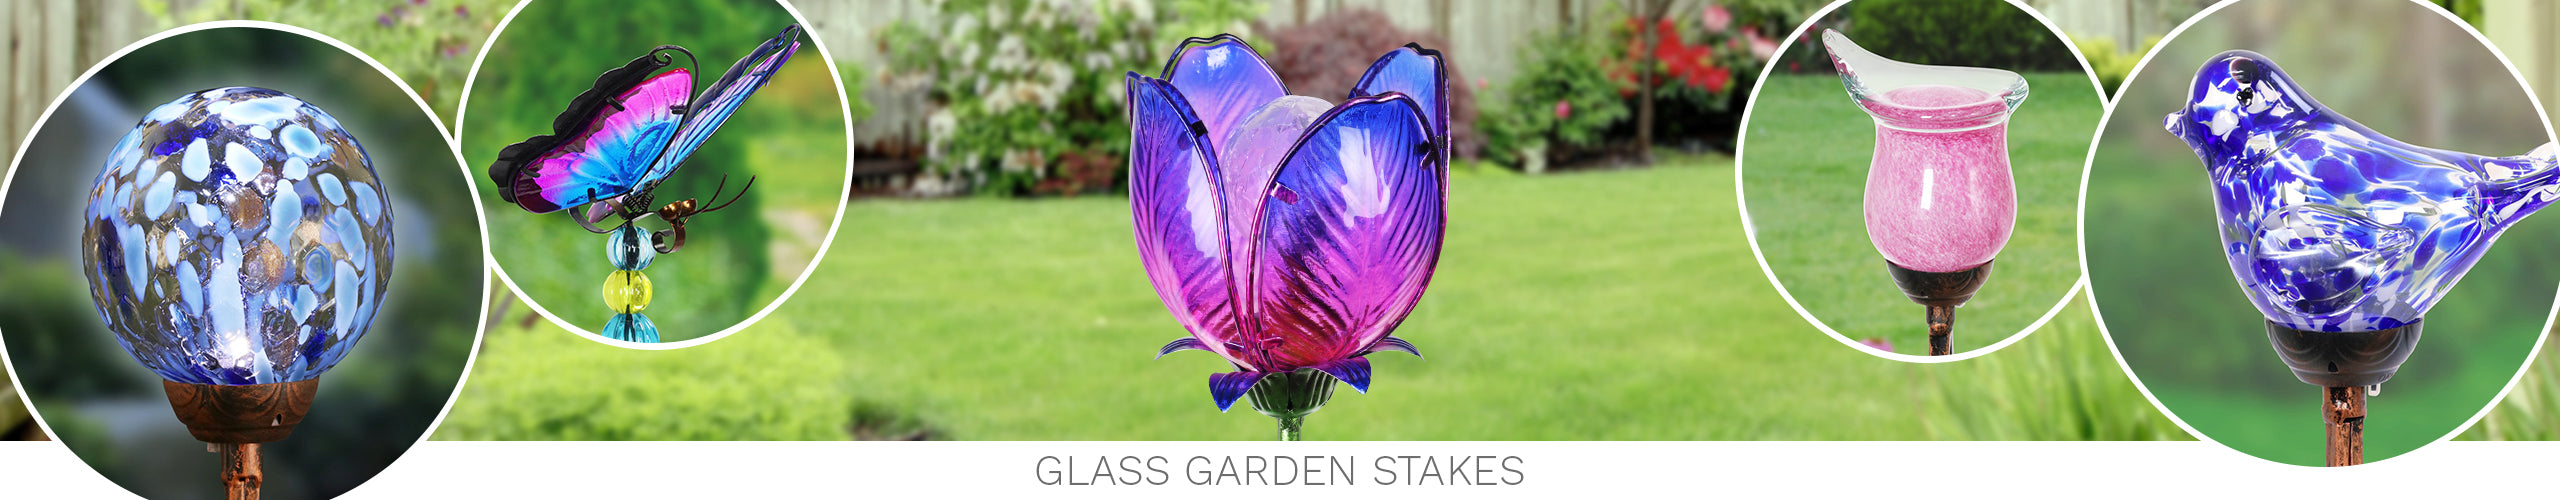 Glass Garden Stakes